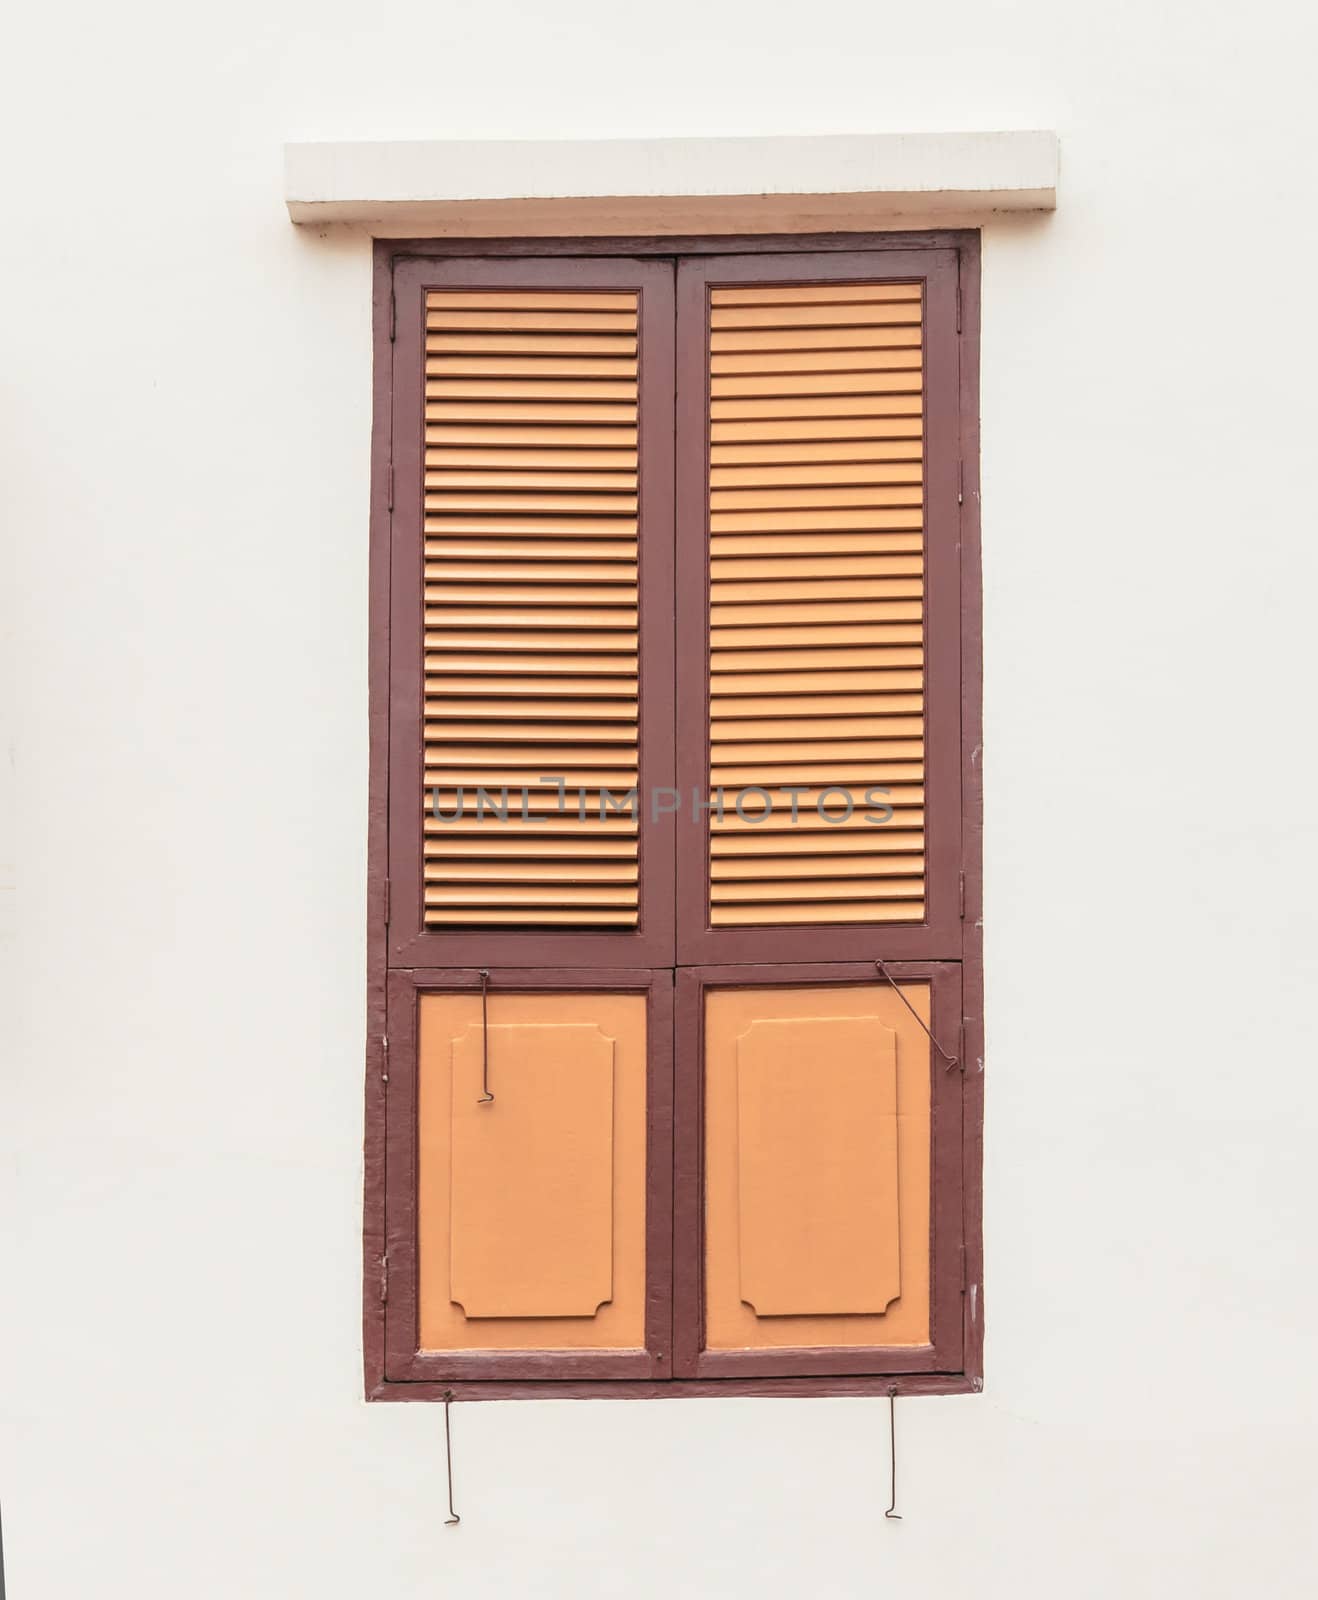 Wooden window on plain wall by punpleng